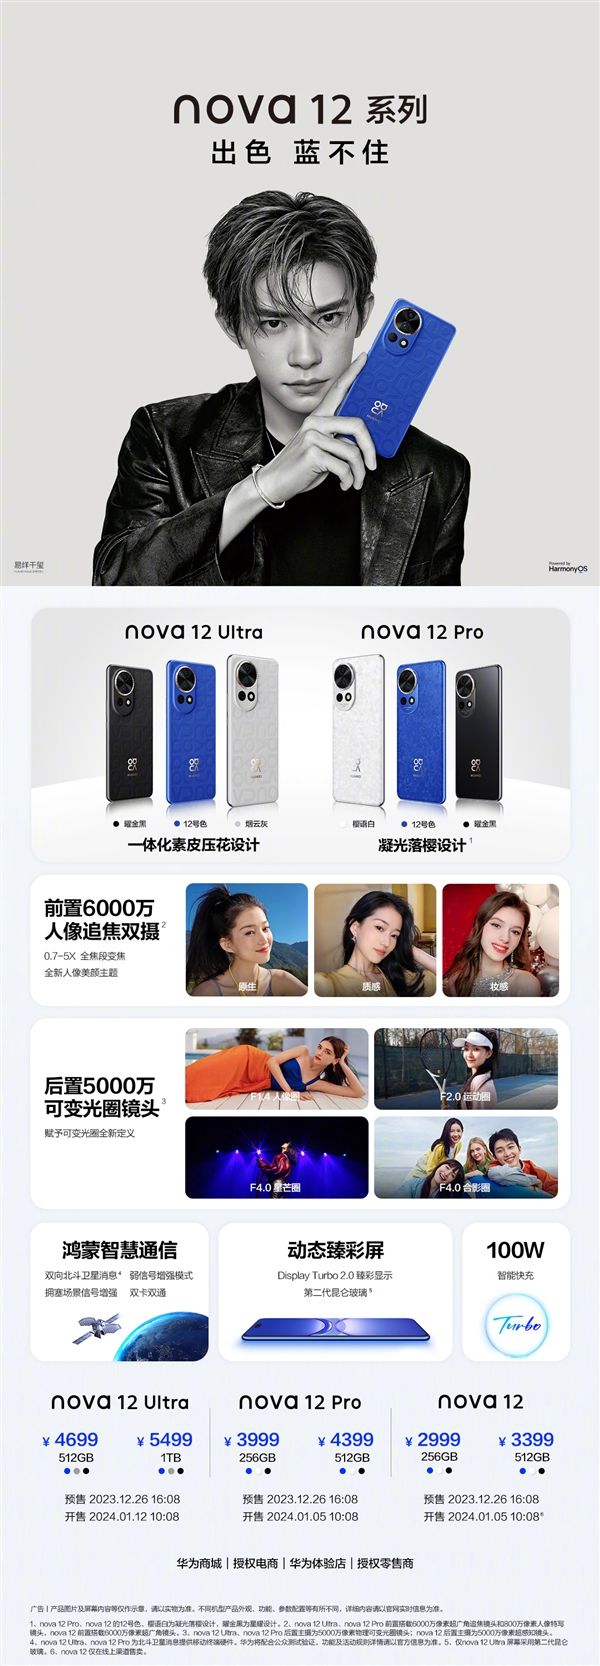 华为nova12、华为nova12Pro和华为nova12Ultra有哪些区别 三款手机区别对比